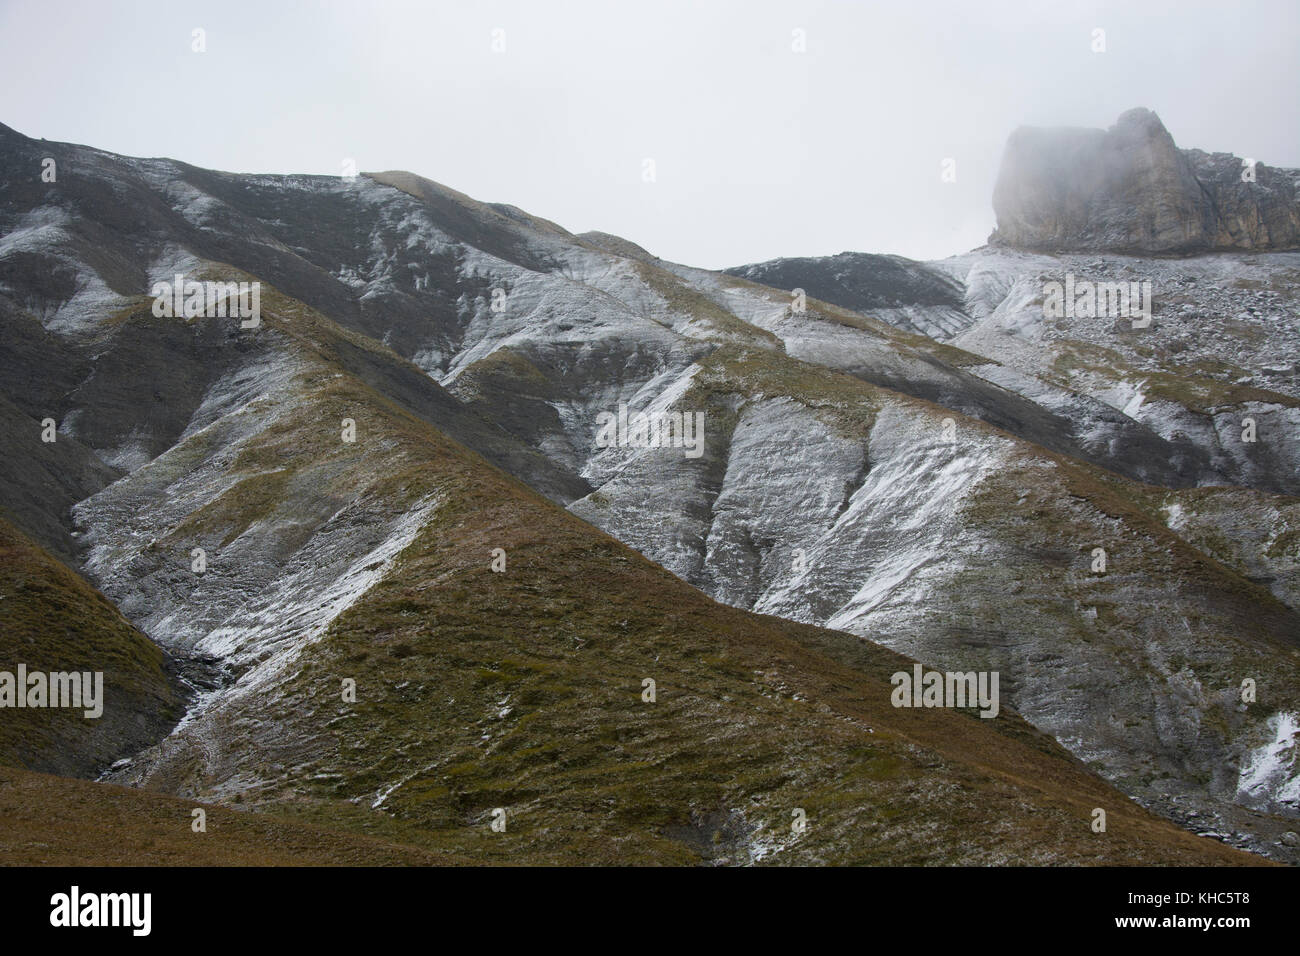 Neve fresca sulle piste alpine.Caption locale *** Svizzera Vallese, derborence, miex, alpi, pendii, valley, neve, contrasto, autunno Foto Stock